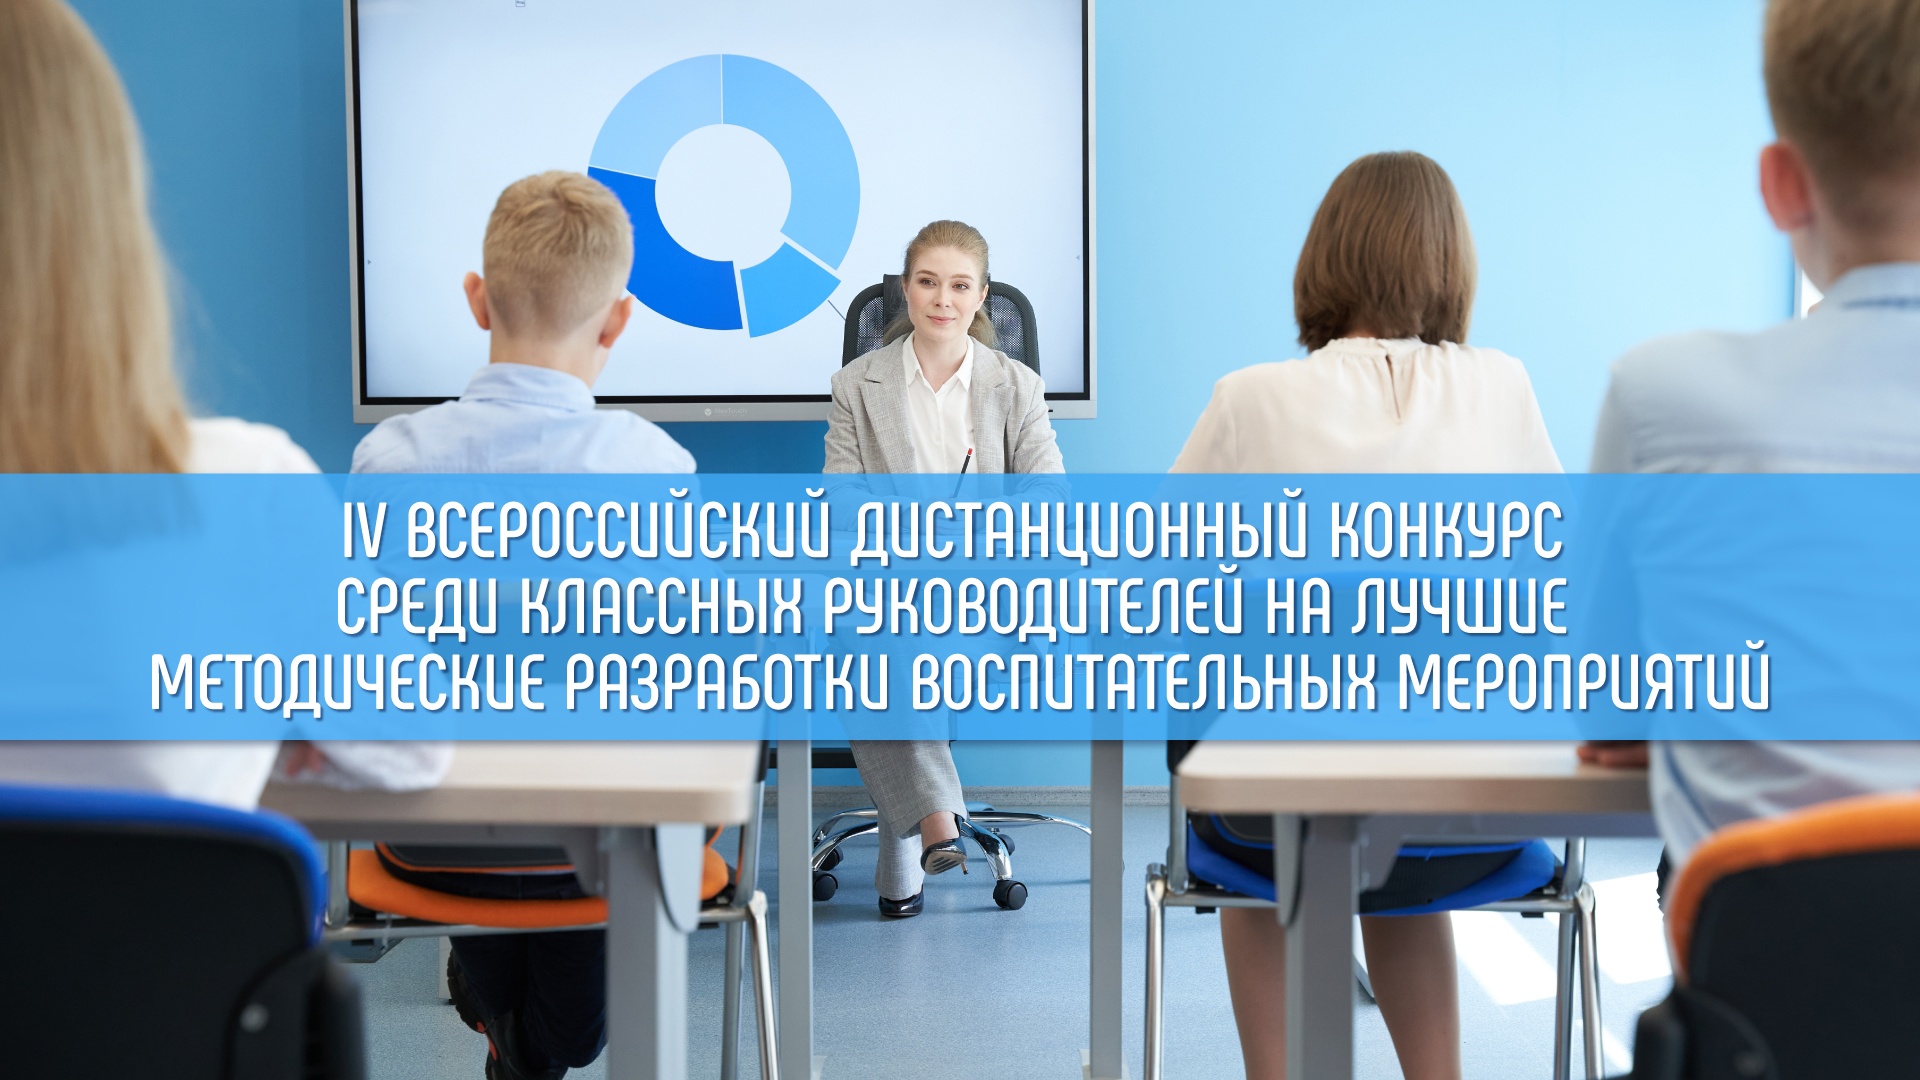 Подведены итоги IV Всероссийского дистанционного конкурса среди классных руководителей на лучшие методические разработки воспитательных мероприятий